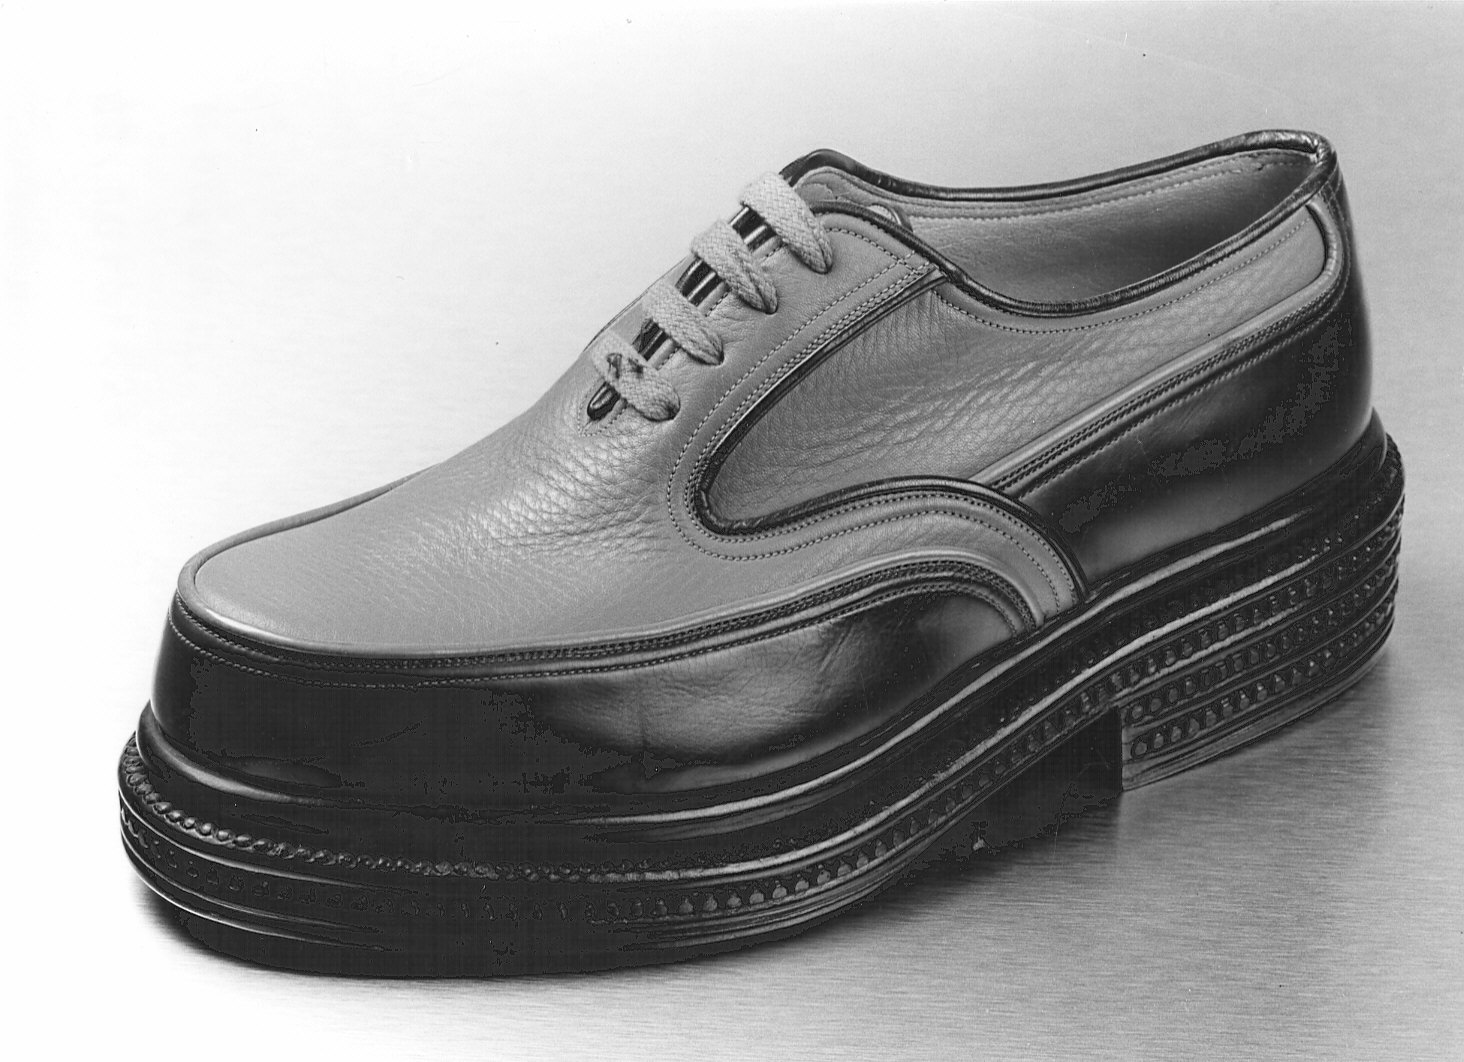 Non rilevato (scarpe da uomo) - manifattura (1940/ 1945)